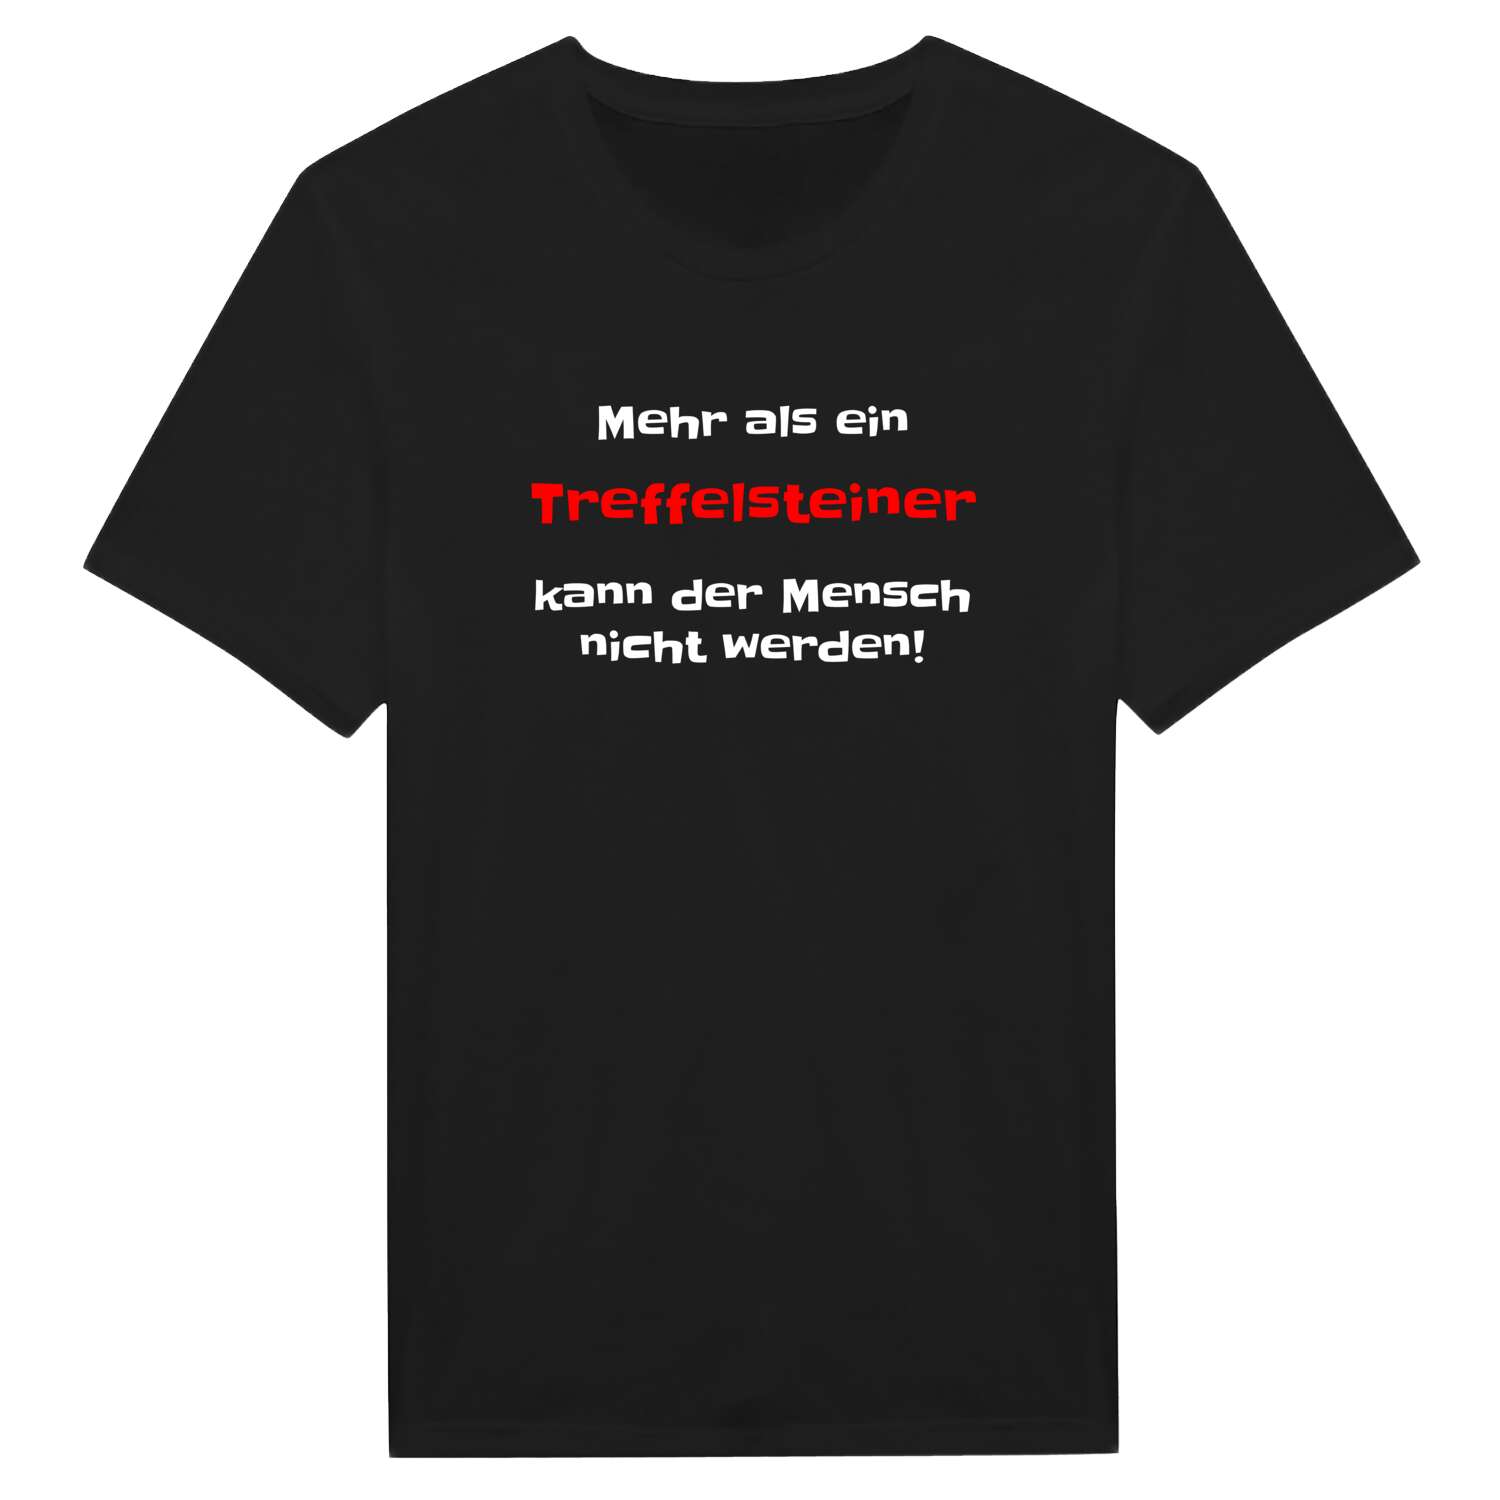 Treffelstein T-Shirt »Mehr als ein«